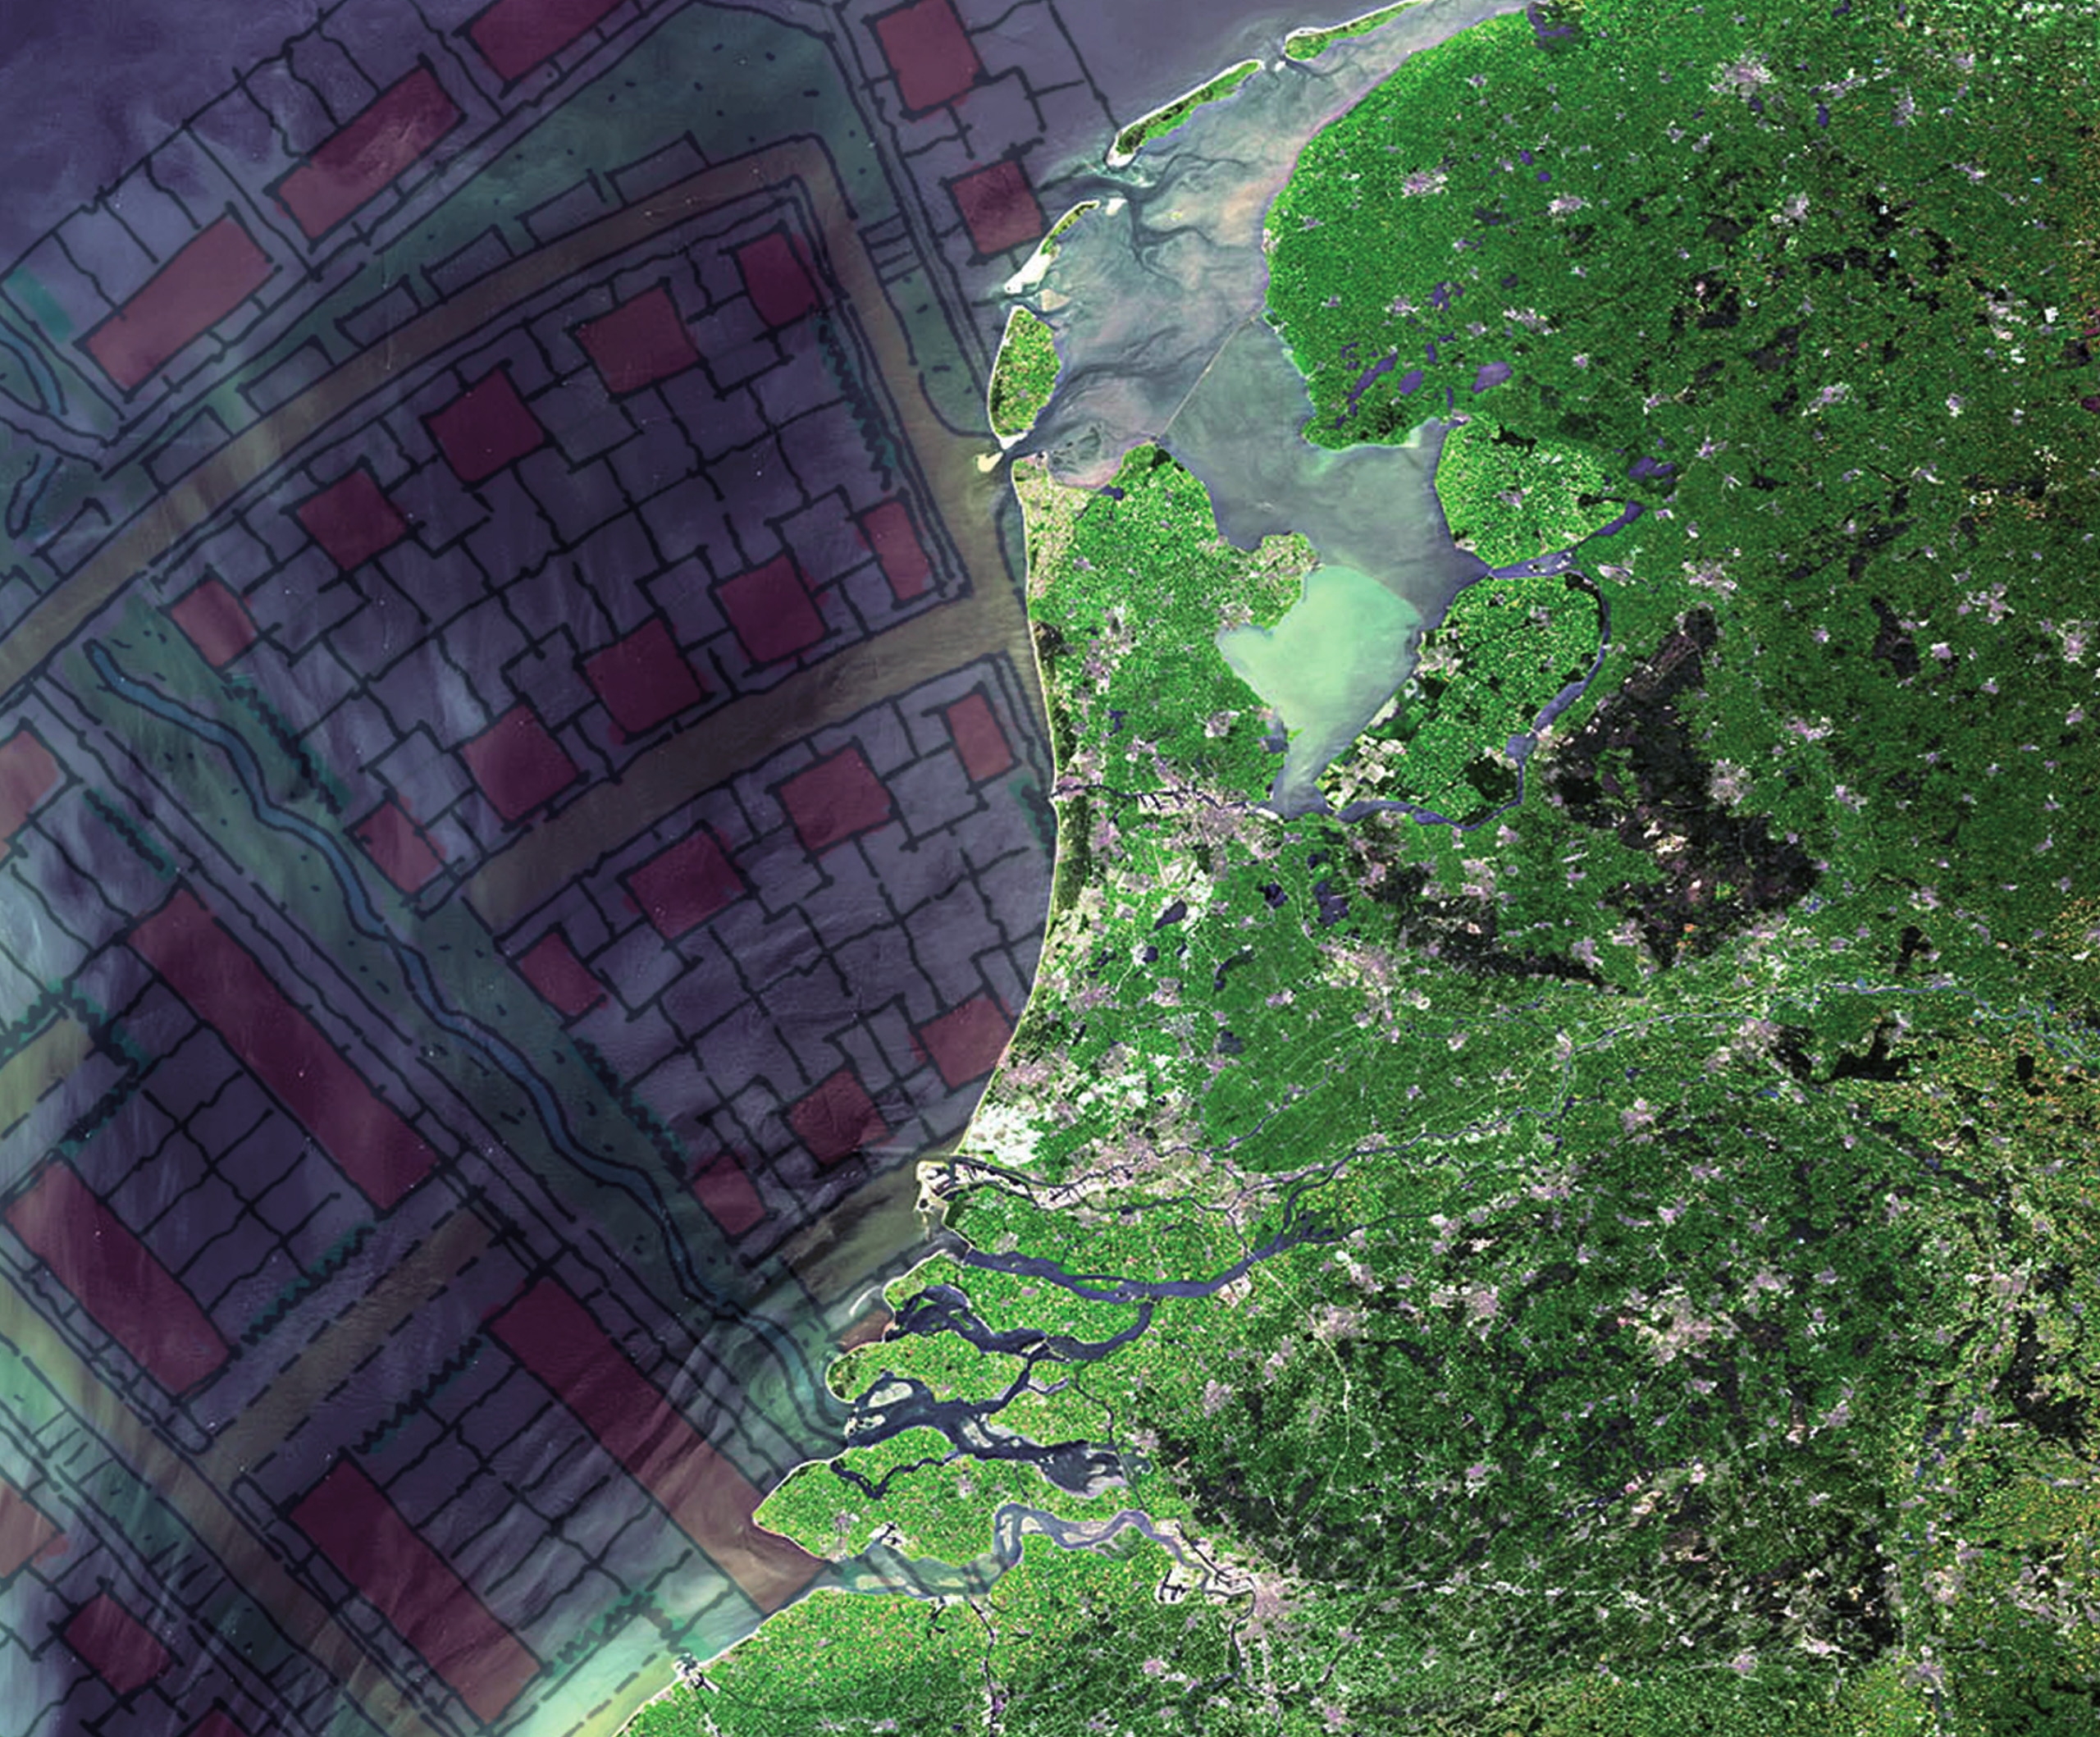 kom naar de denkfabriek! Heb jij een visie op de kustontwikkeling van Nederland?